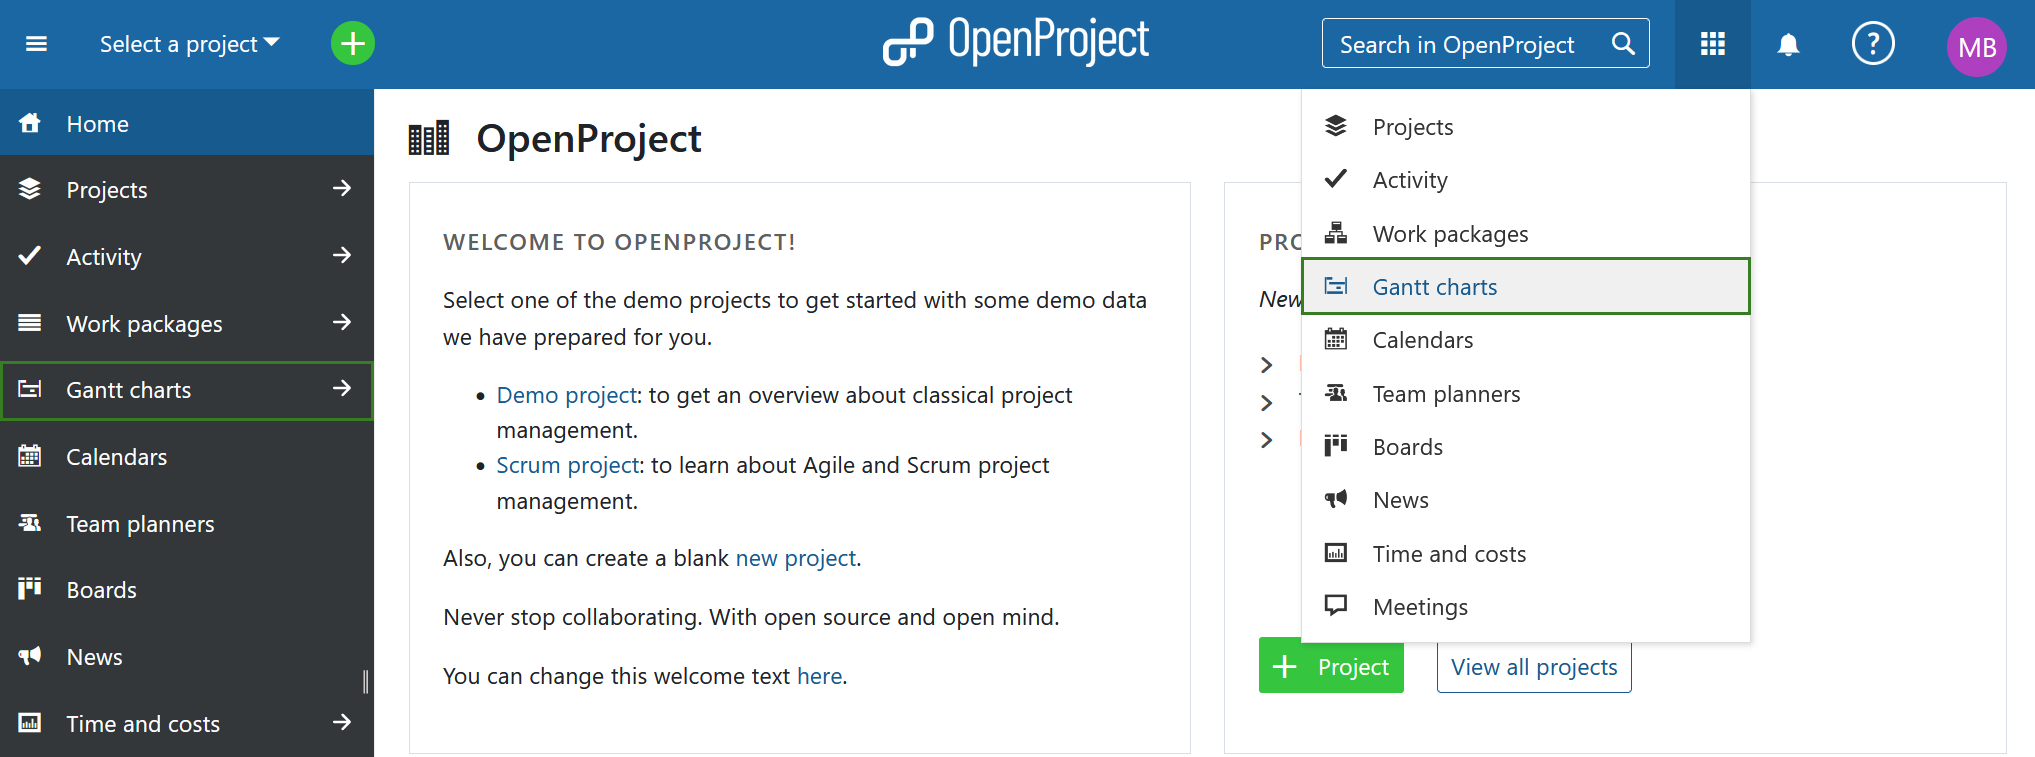 OpenProject's Gantt charts module